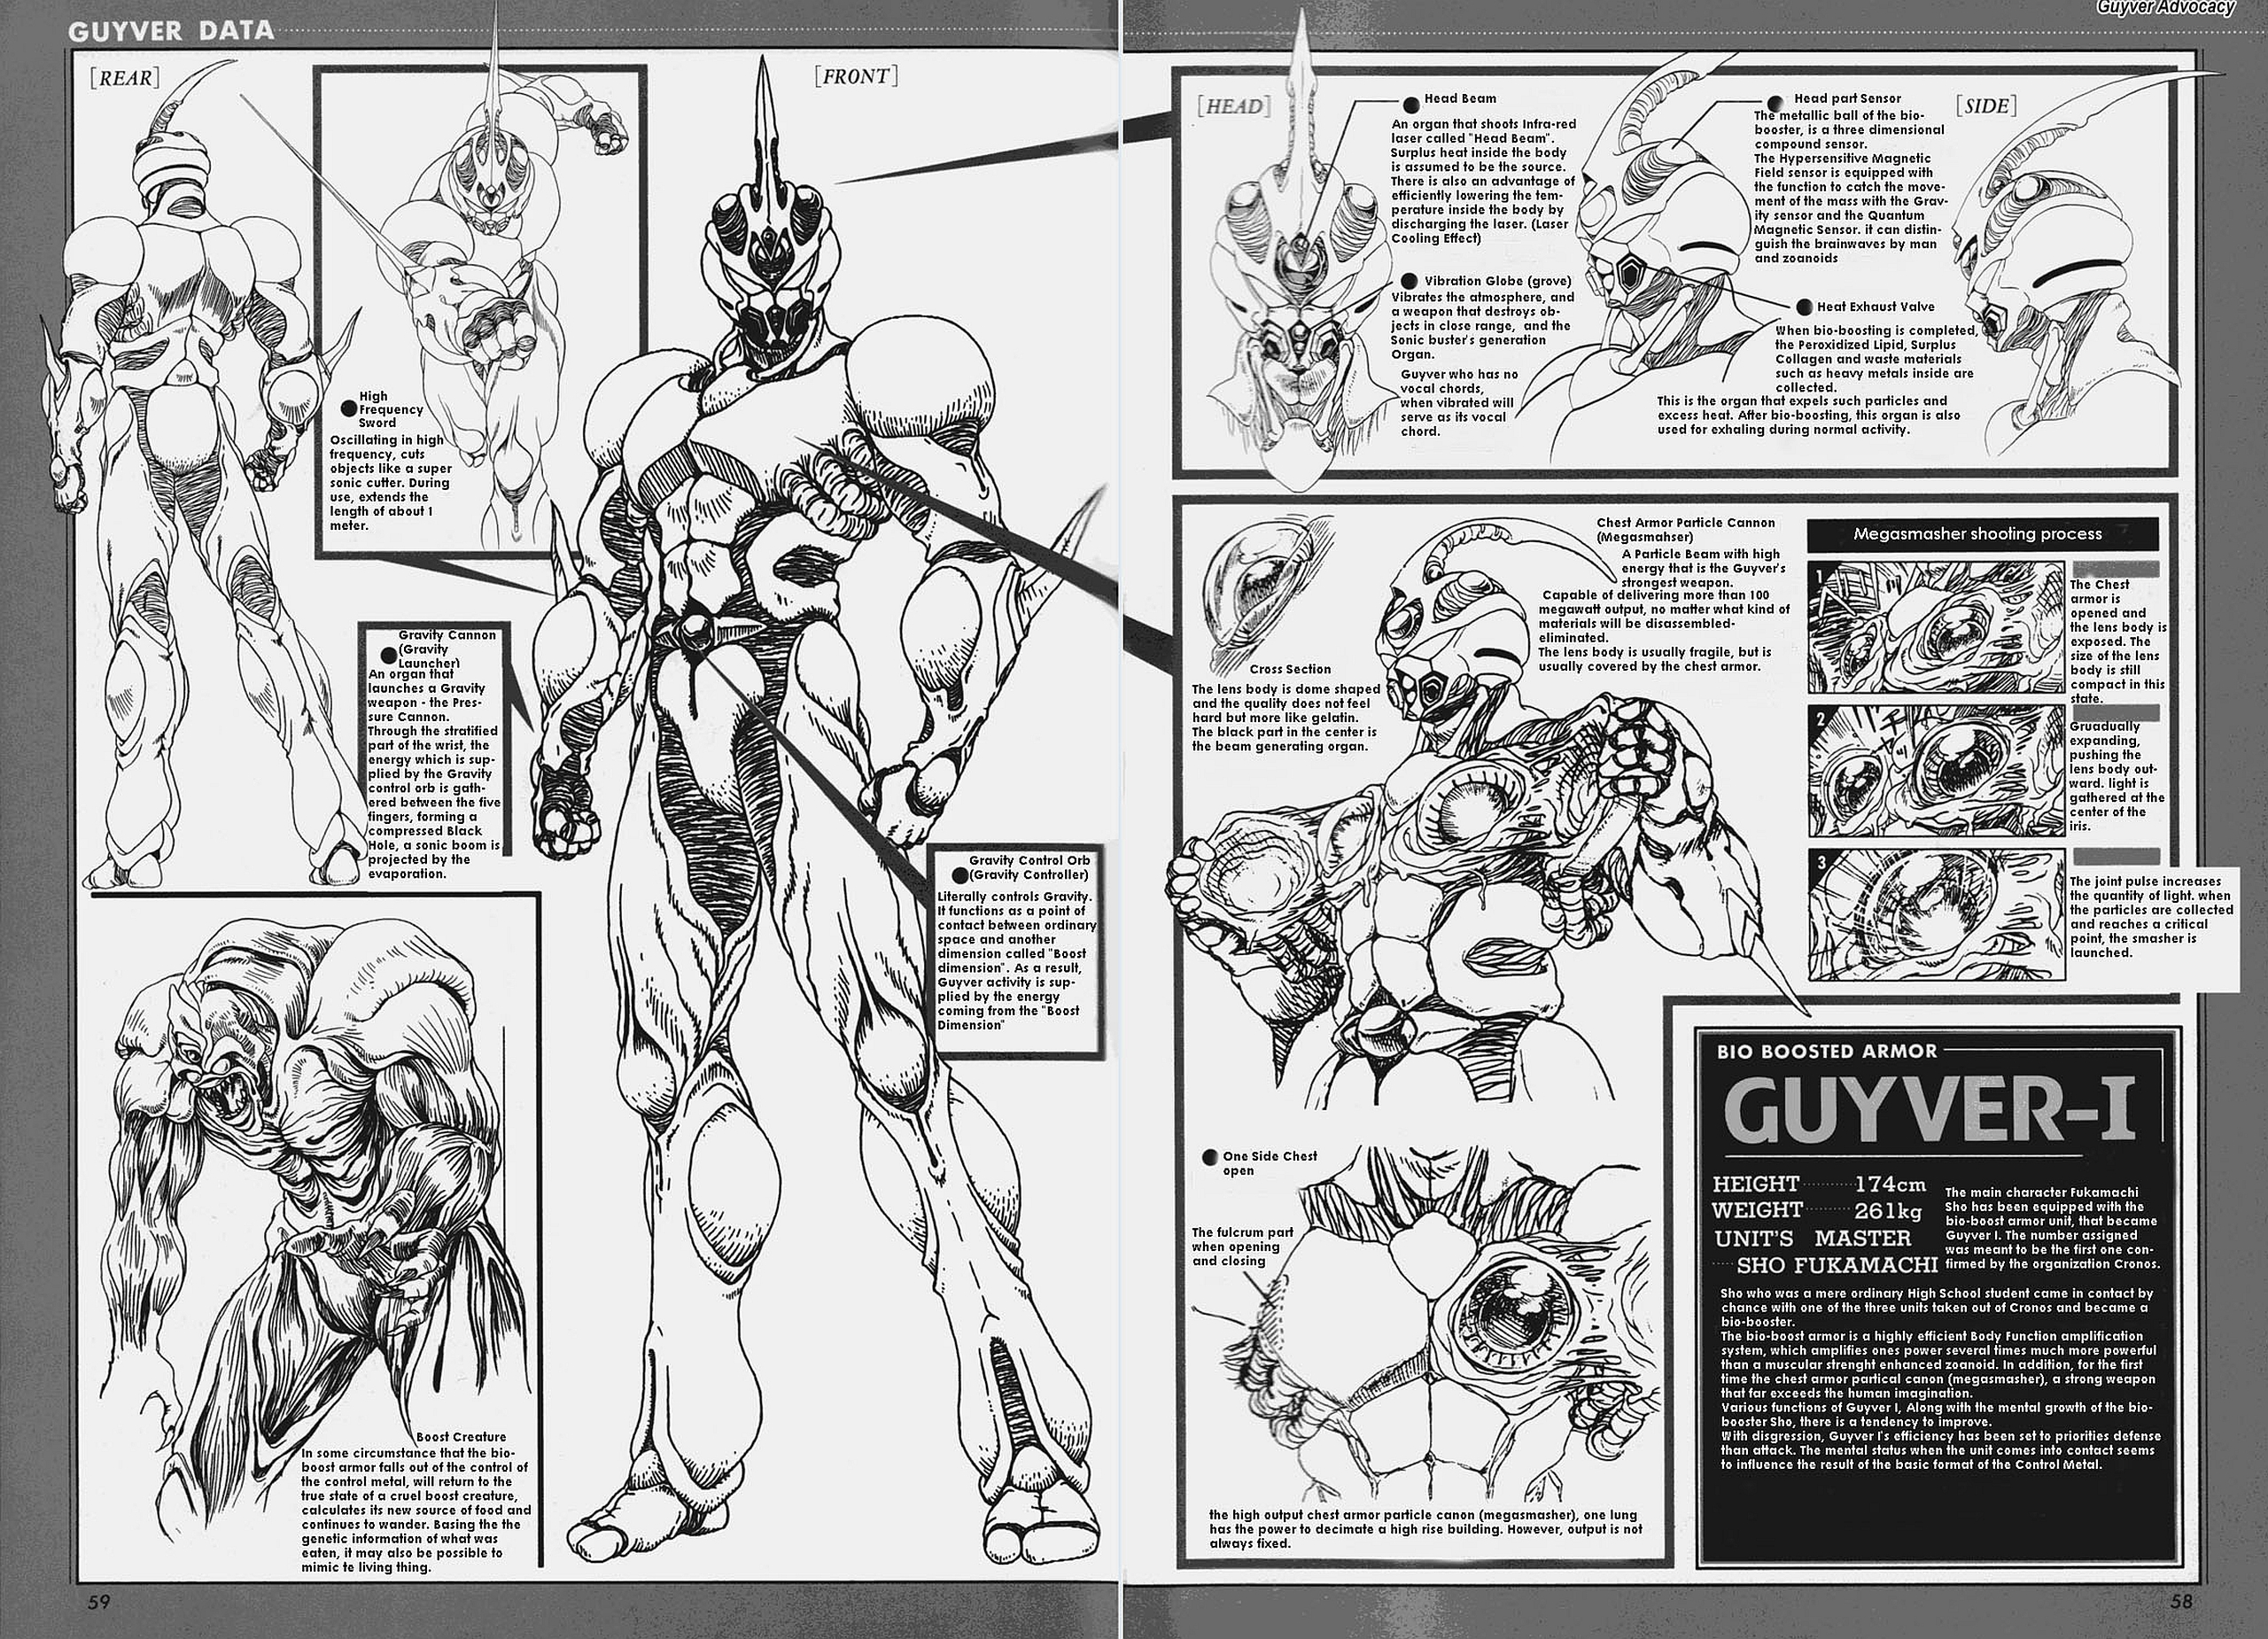 Guyver - The Bioboosted Armor: Guyver III - Figma | Figma | Figures |  Yorokonde